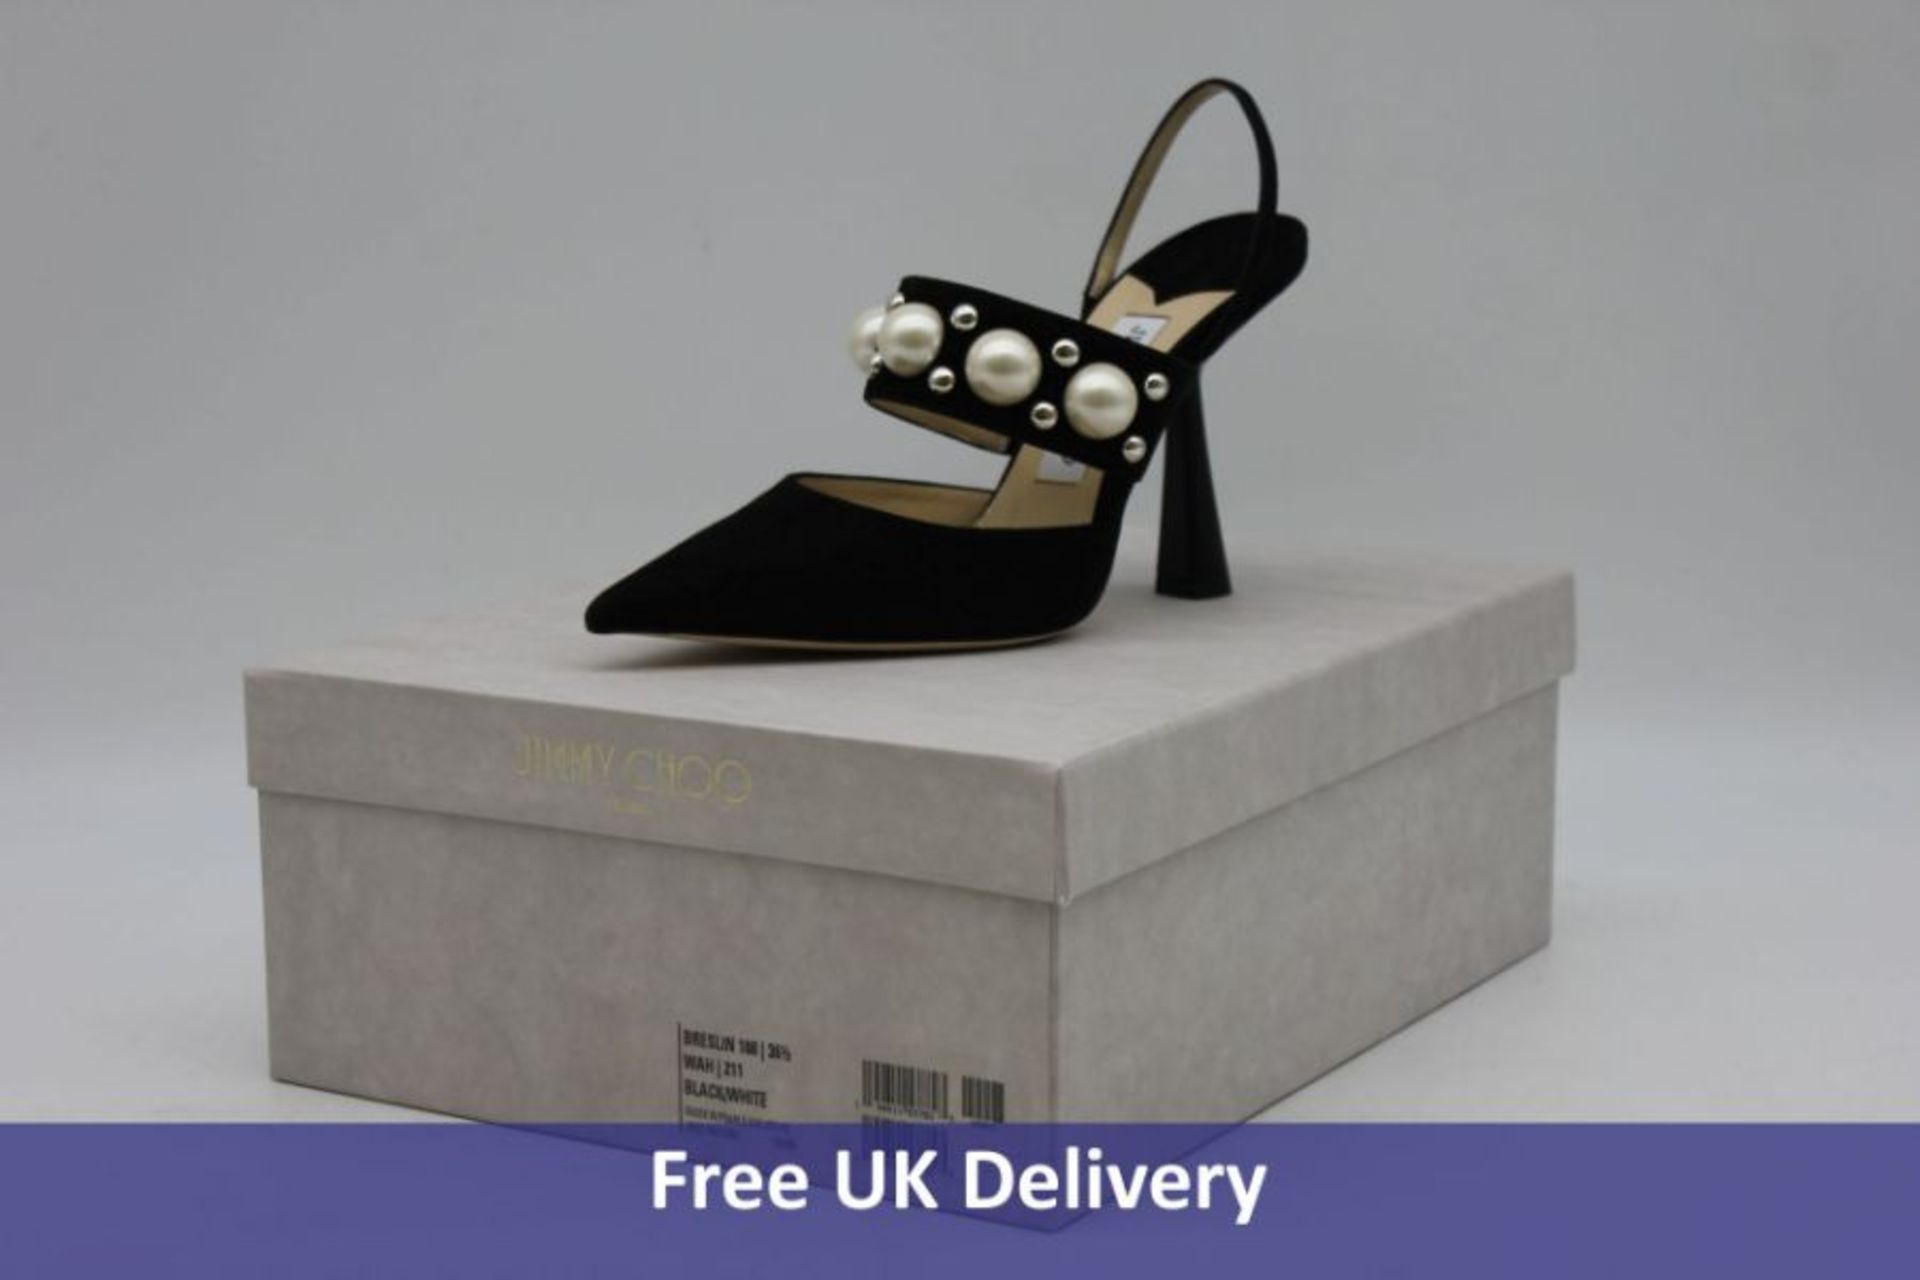 Jimmy Choo Woman's Breslin 100 Suede Shoe, Black/White, Size 40